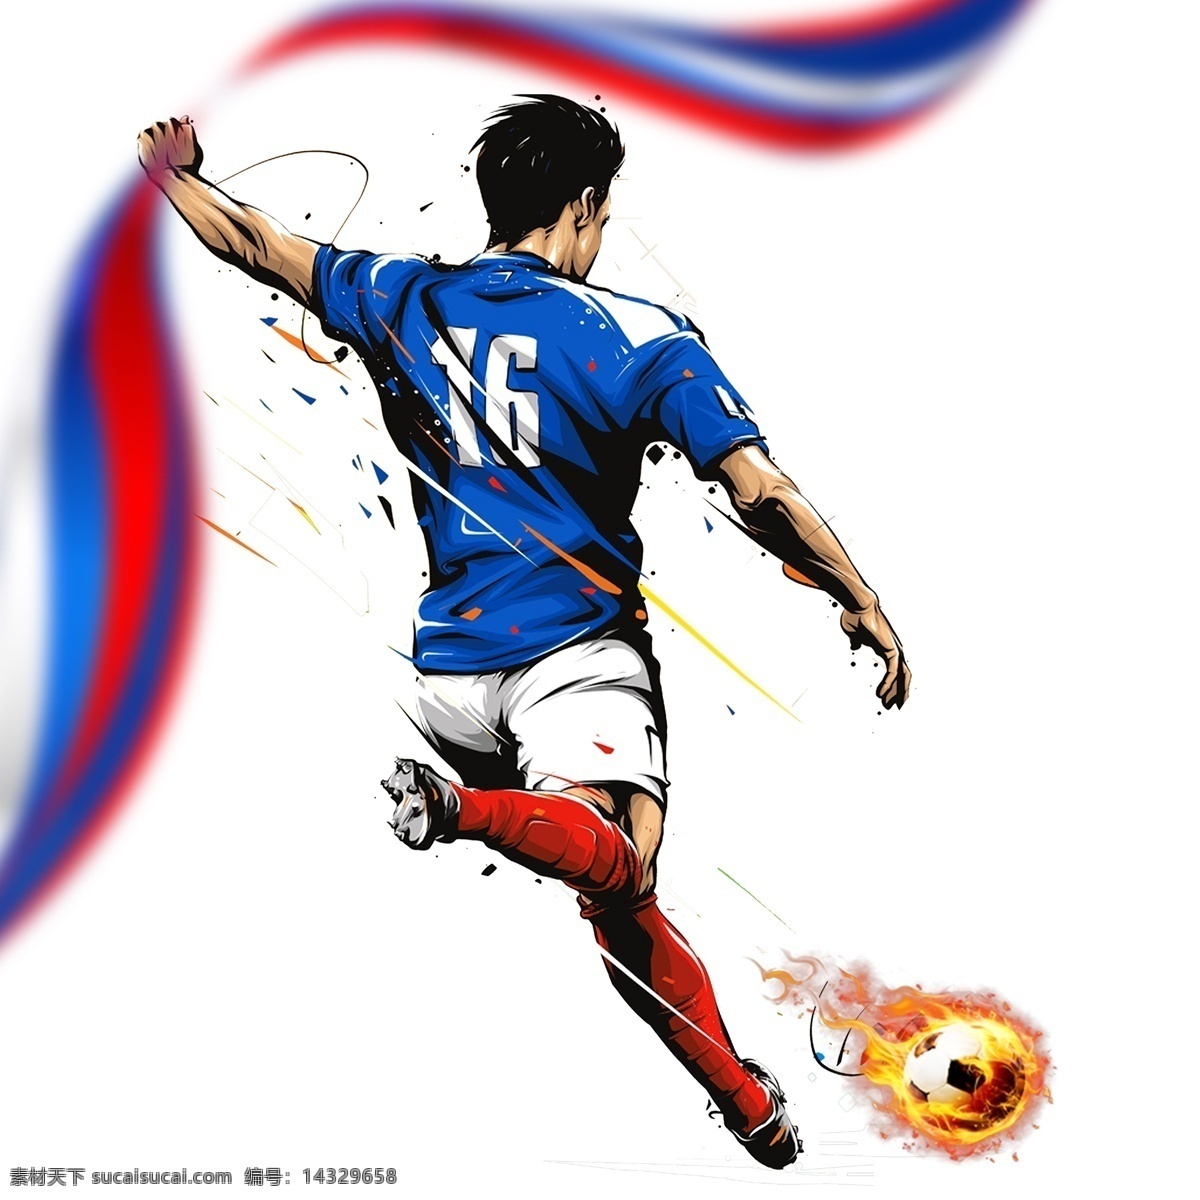 足球 世界杯 火箭队 海报 足球世界杯 合成 足球比赛 炫酷图形 psd合成